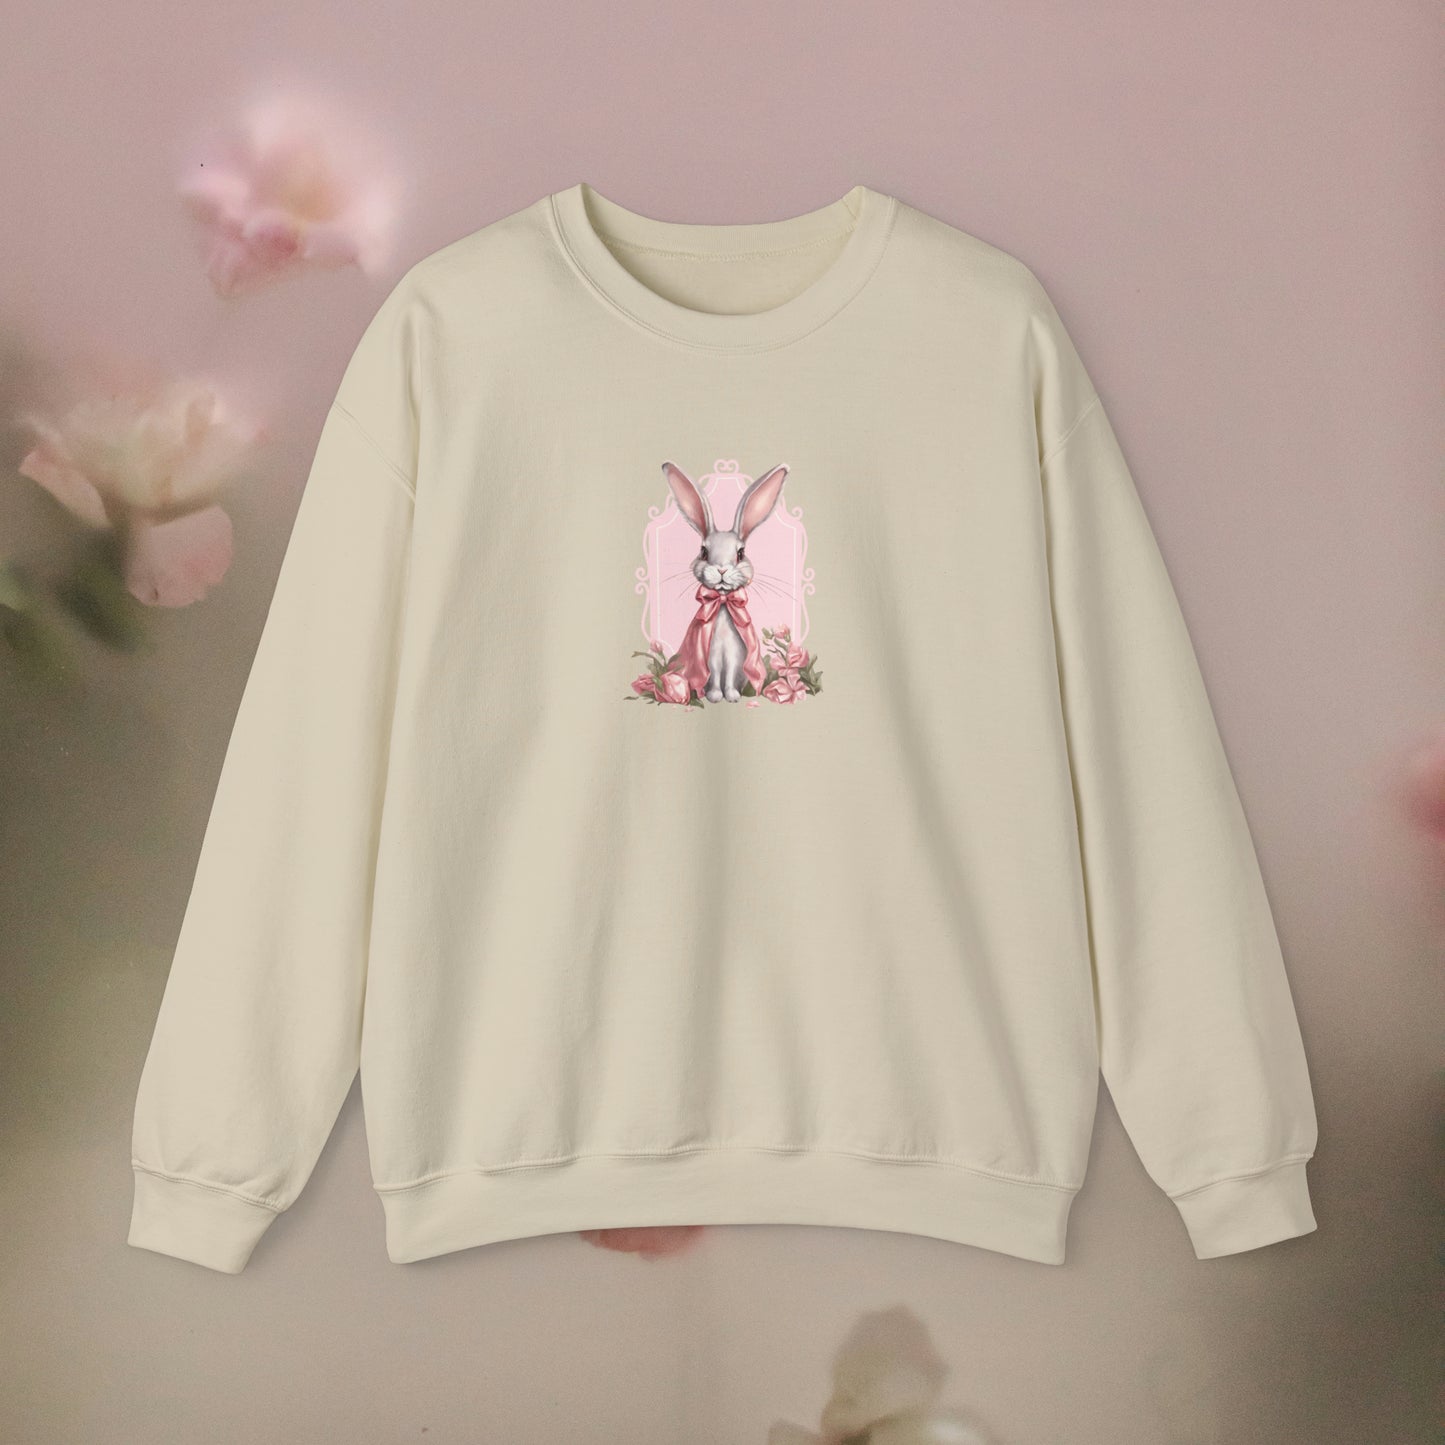 Coquette Sweatshirt, Trendy Crewneck, Bunny Sweatshirt, Easter Gift, Cottagecore Sweatshirt , Vintage Graphic Sweatshirt, Gift for Easter